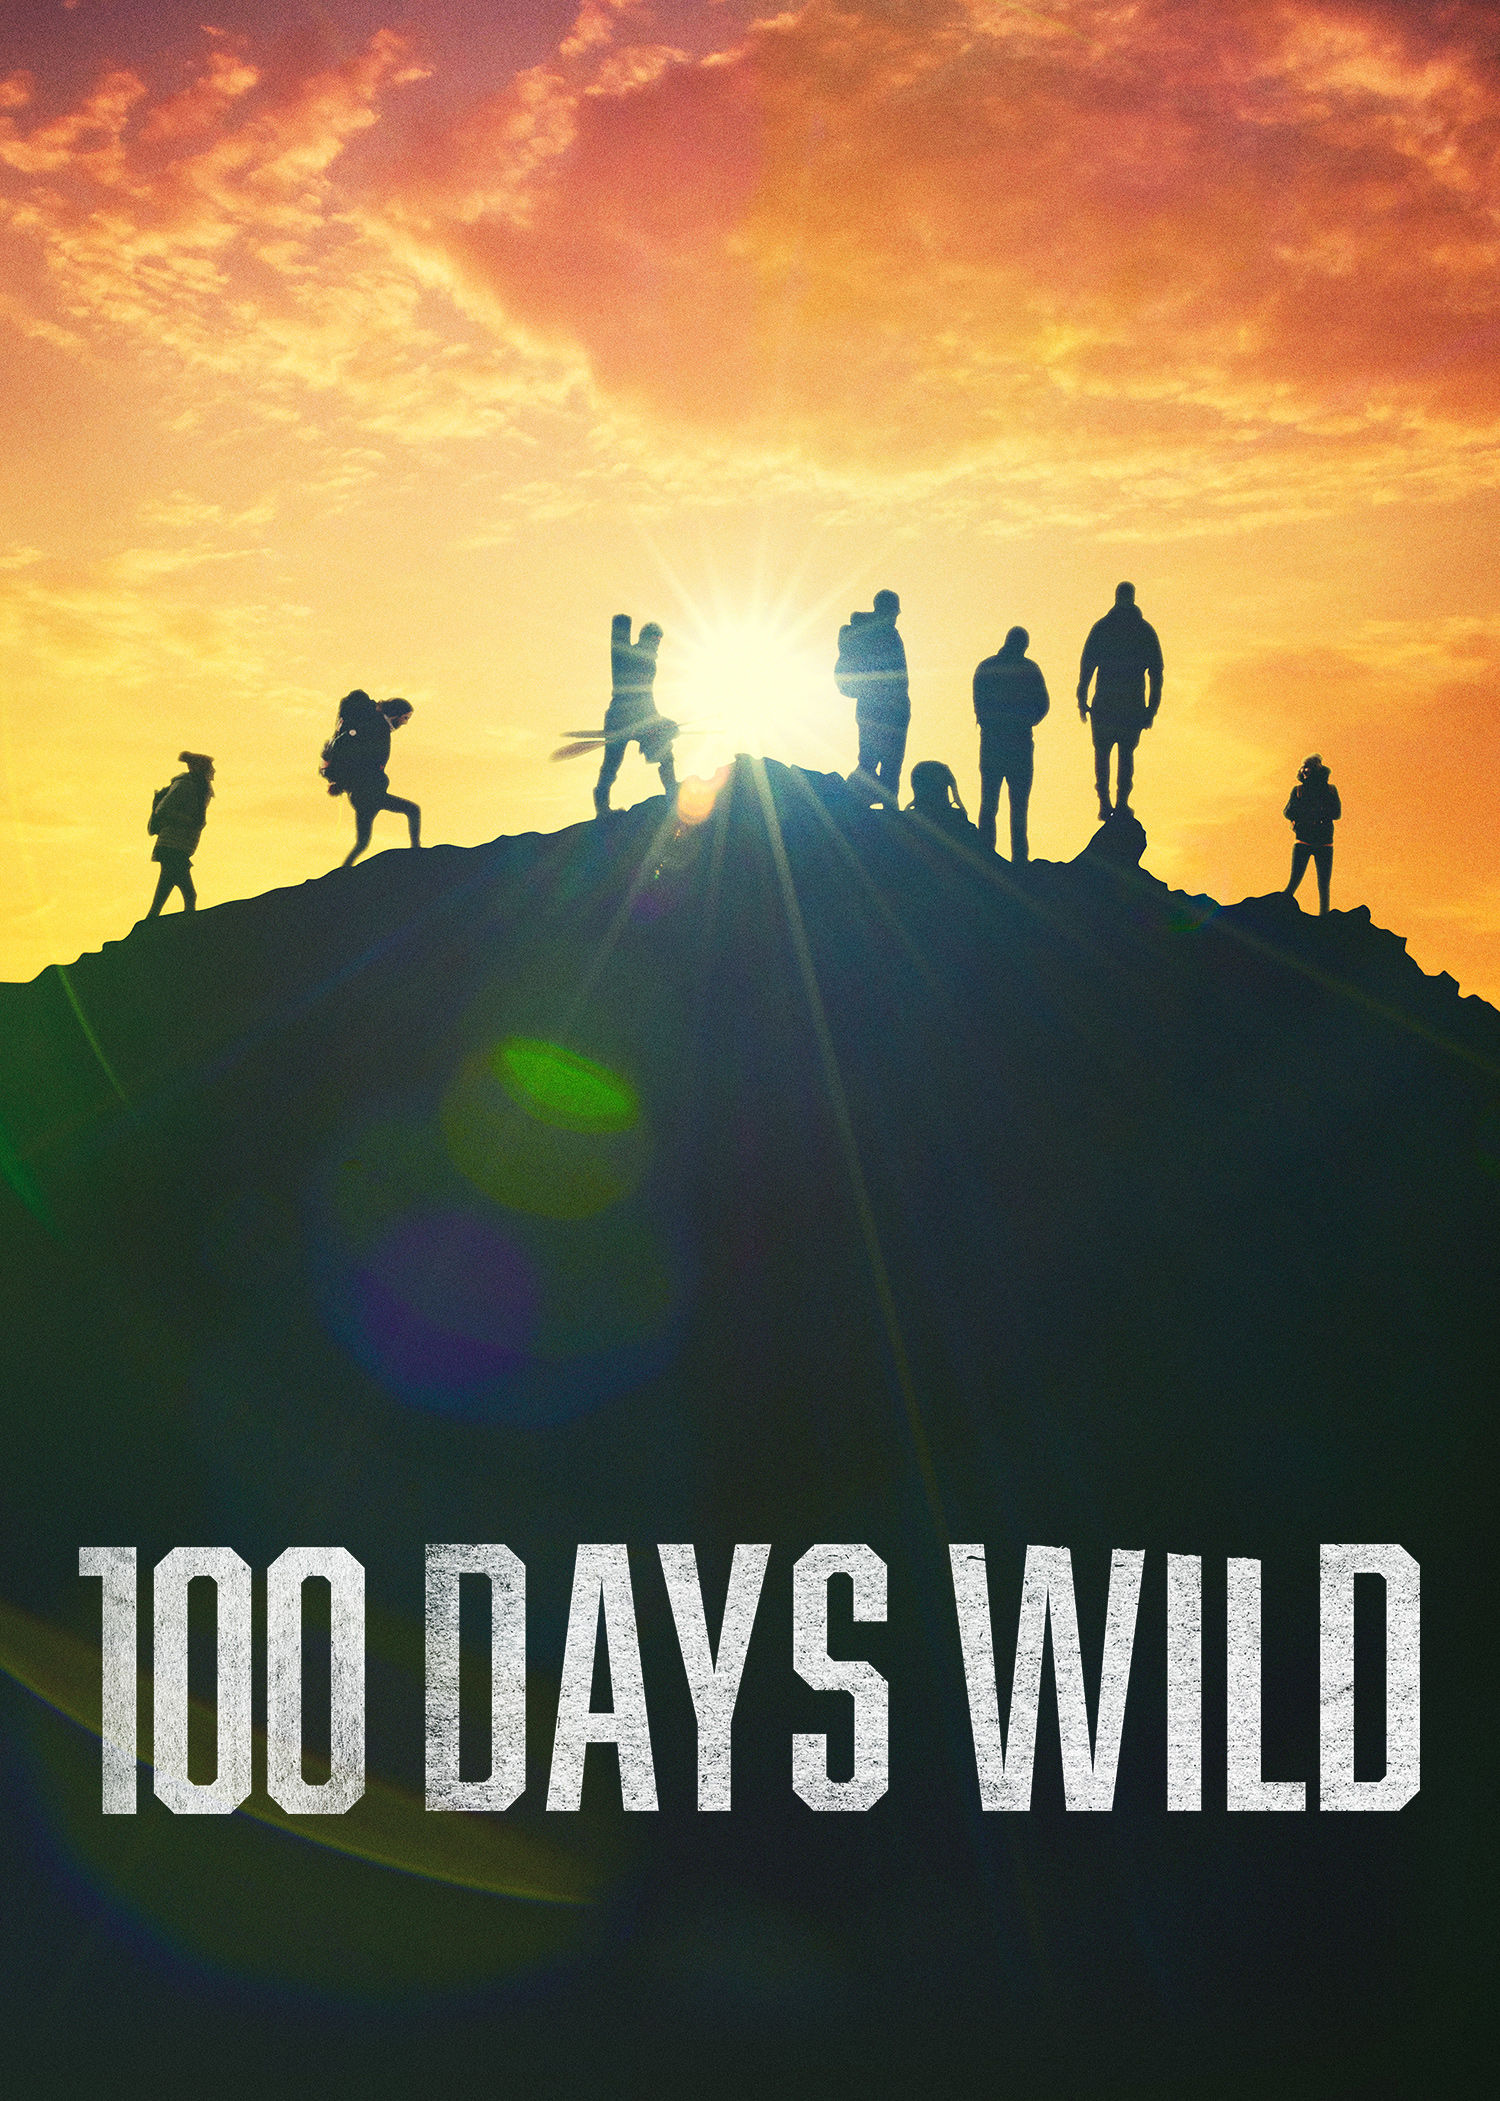 100 Days Wild